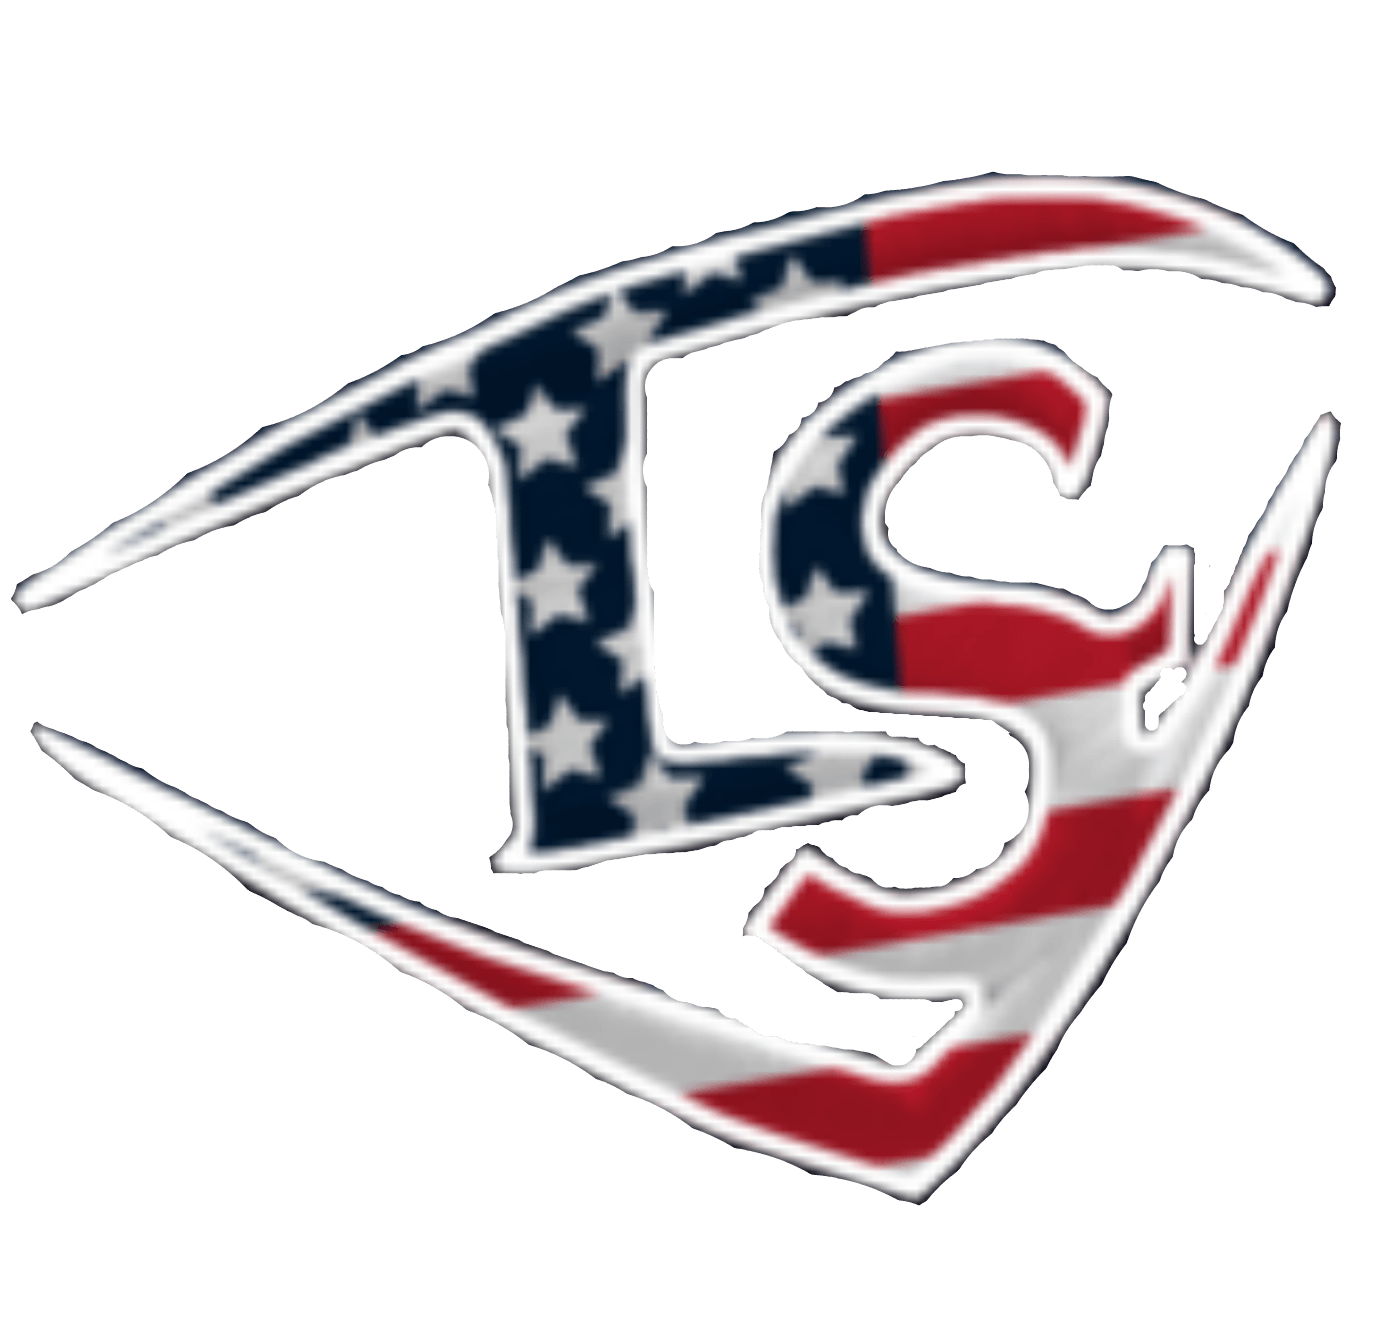 Sluggers Baseball Logo - ALL AMERICAN LOUISVILLE SLUGGER TOP PROSPECT SHOWCASE 2017: Baseball ...